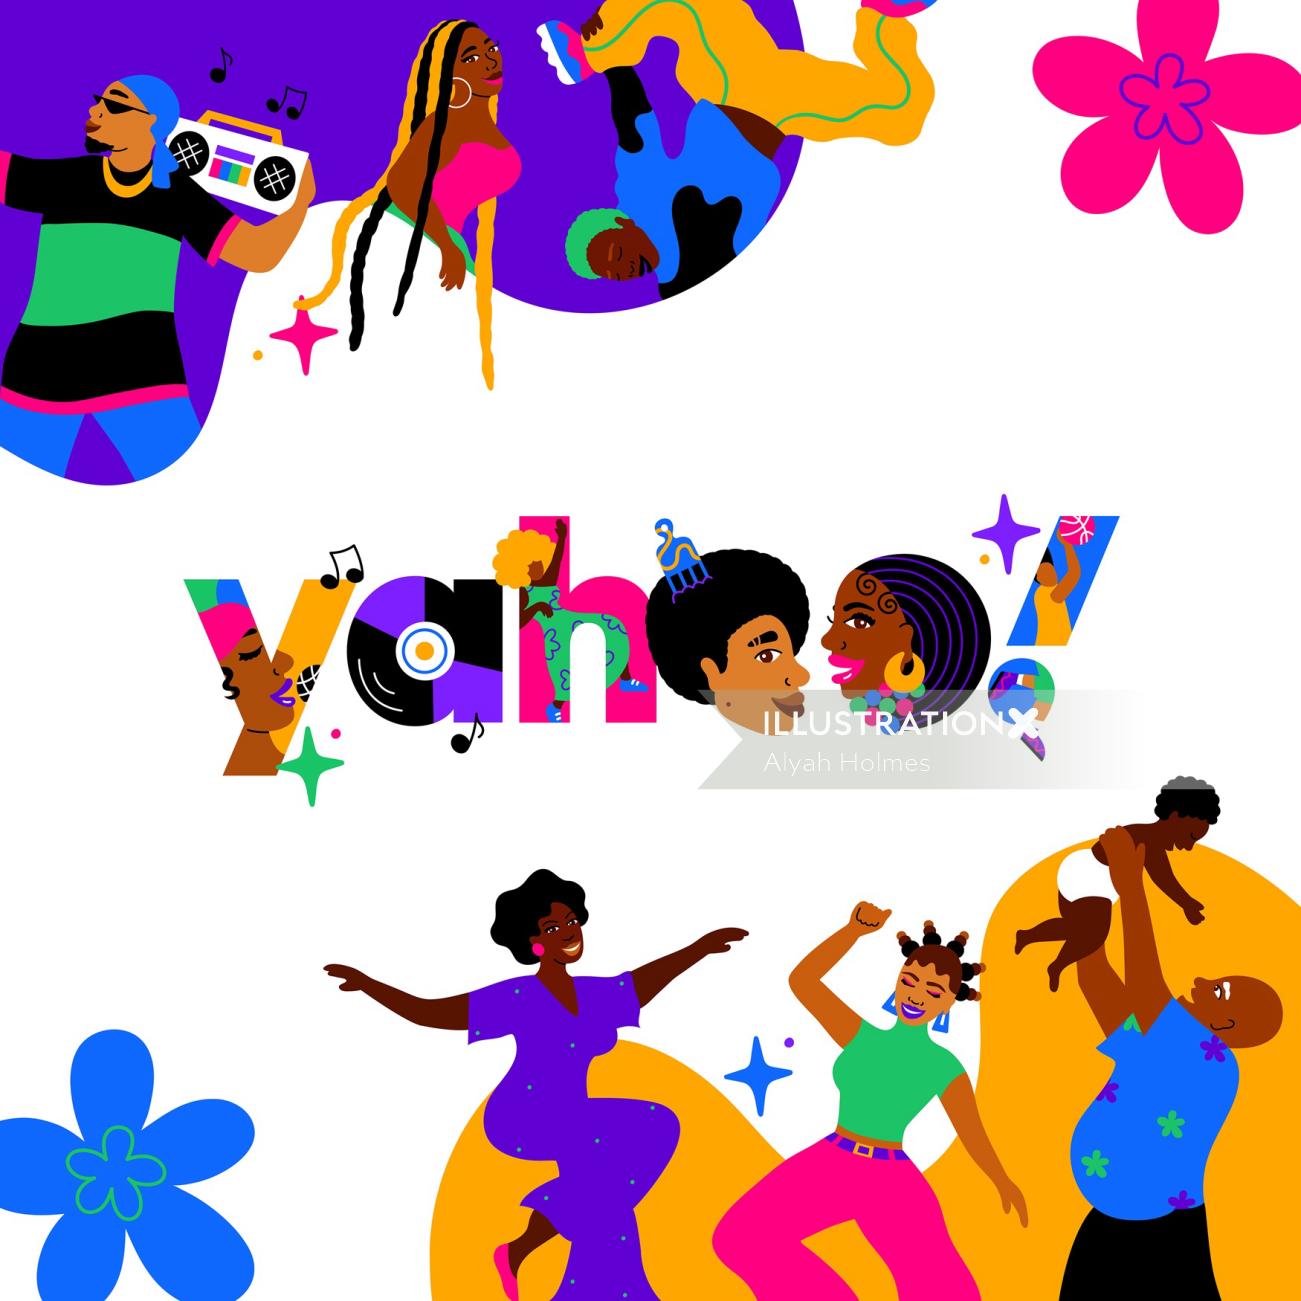 Alyah は Yahoo の黒歴史をテーマにしたロゴを描いています